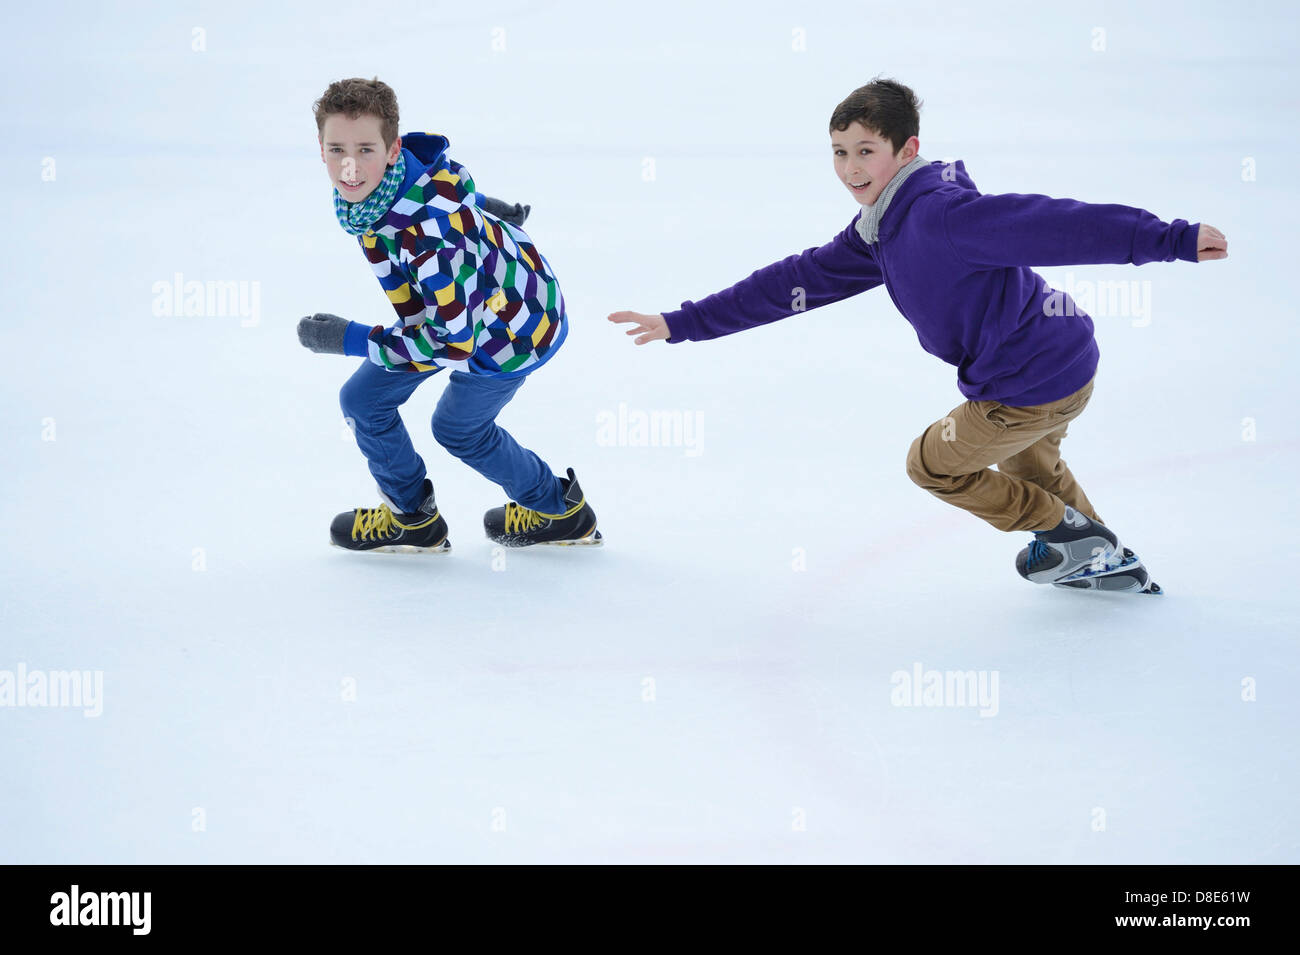 Zwei jungen auf einem gefrorenen See Schlittschuh laufen Stockfoto